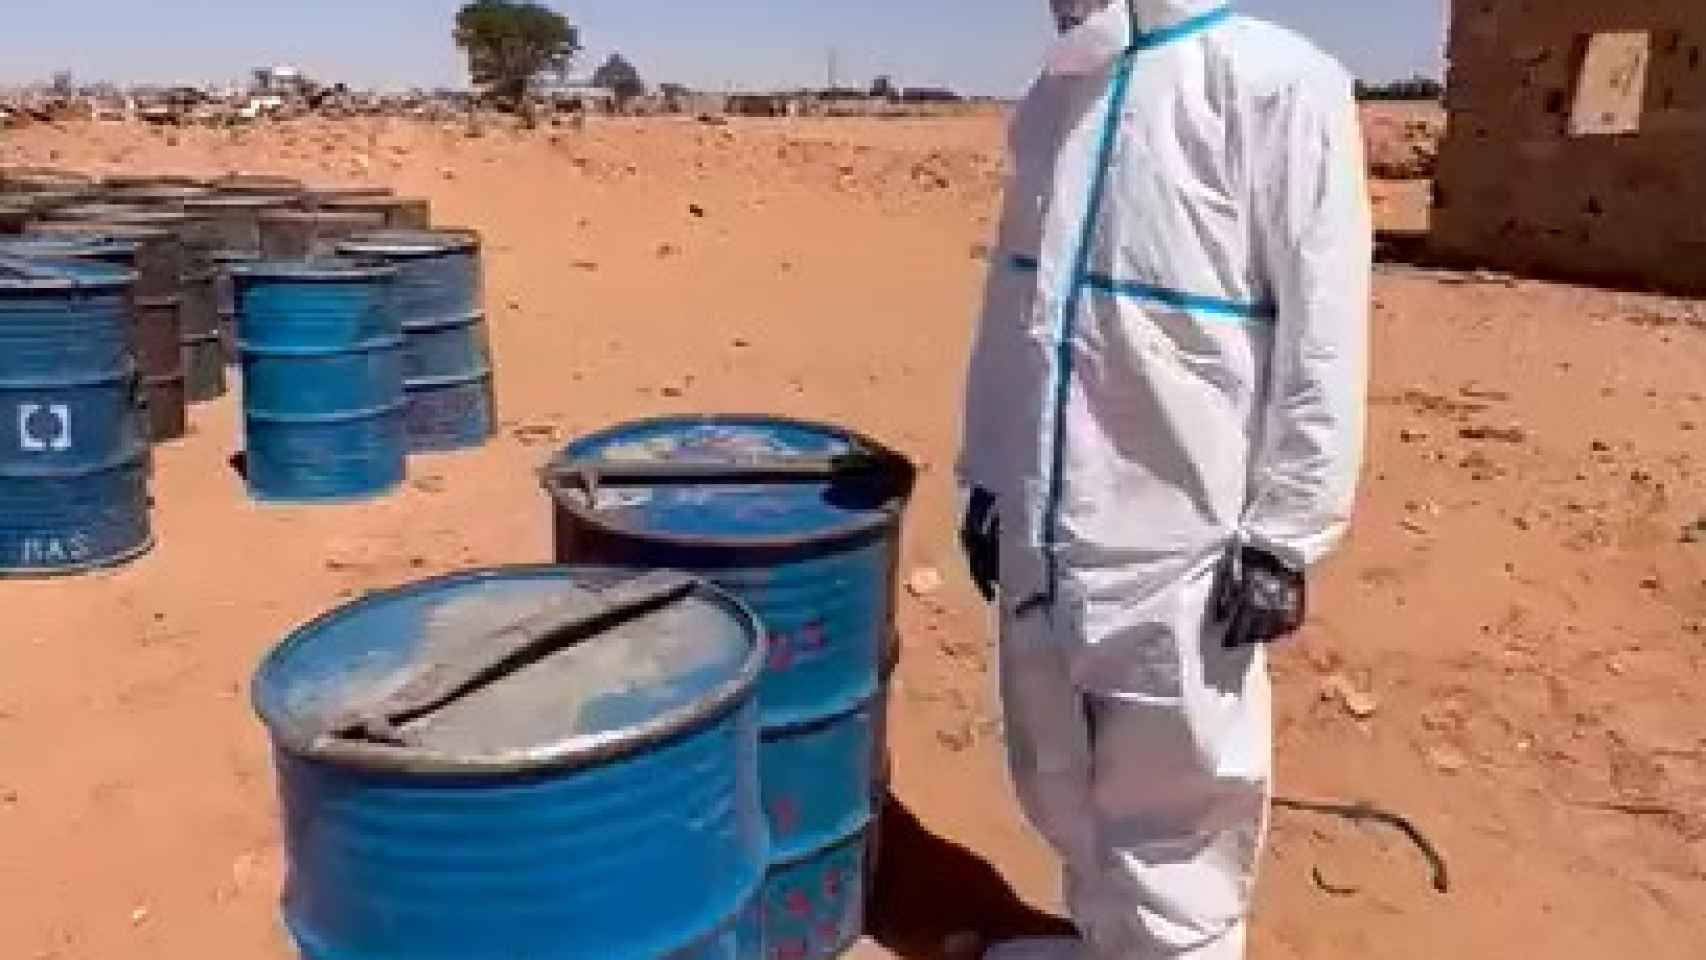 El video muestra a un oficial inspeccionando bidones que supuestamente contienen mineral de uranio